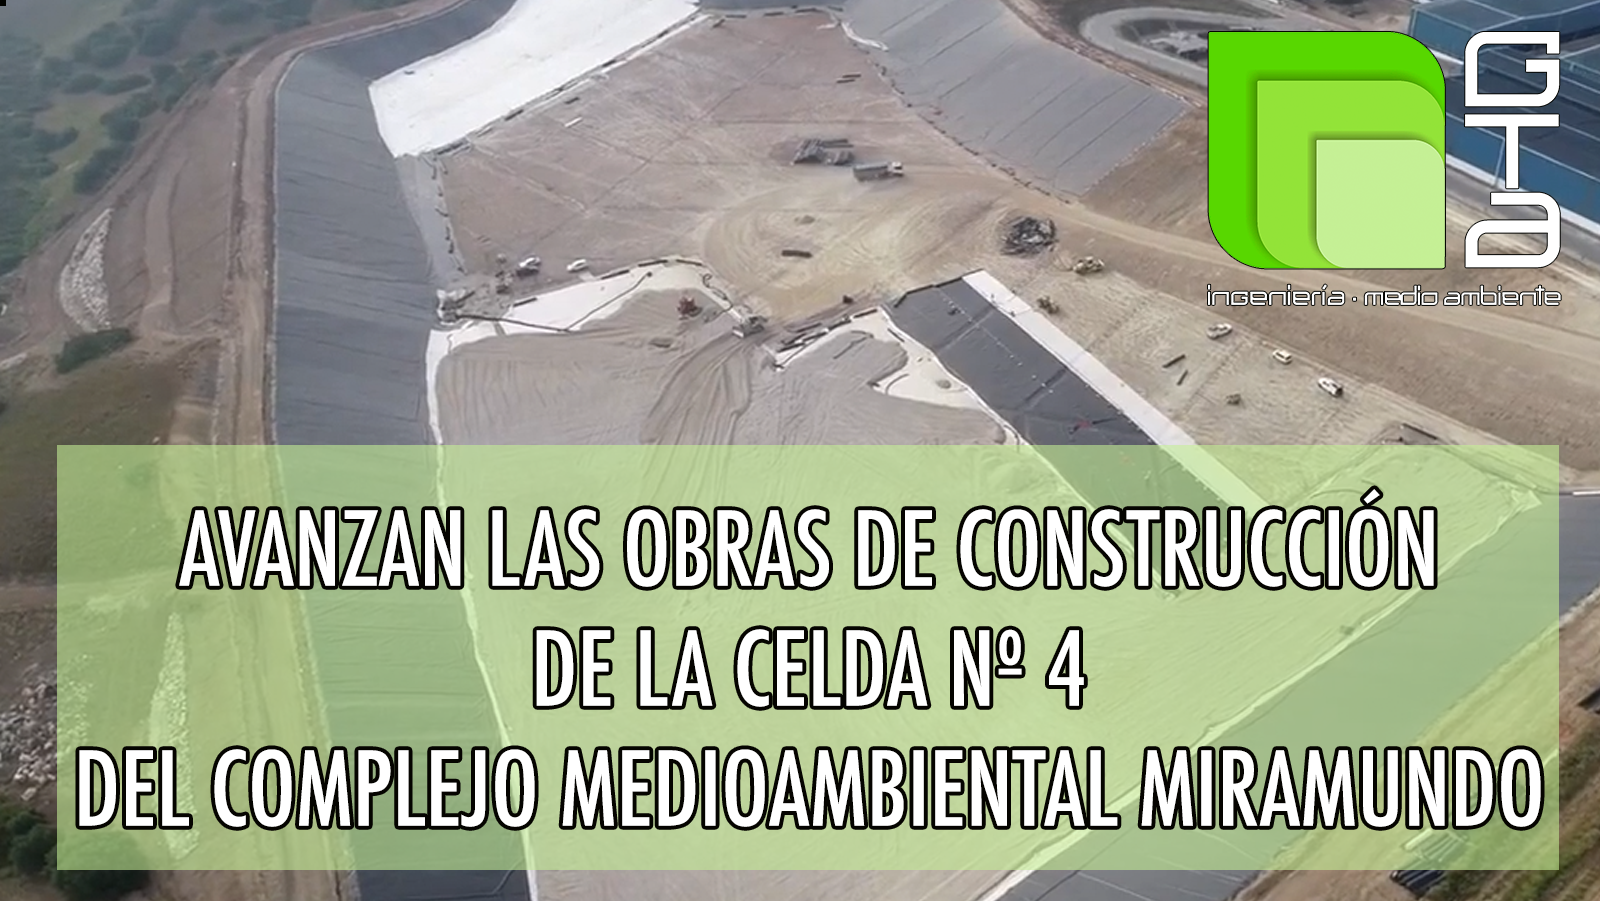 Avanzan las obras de construcción de la celda nº 4 del complejo medioambiental Miramundo